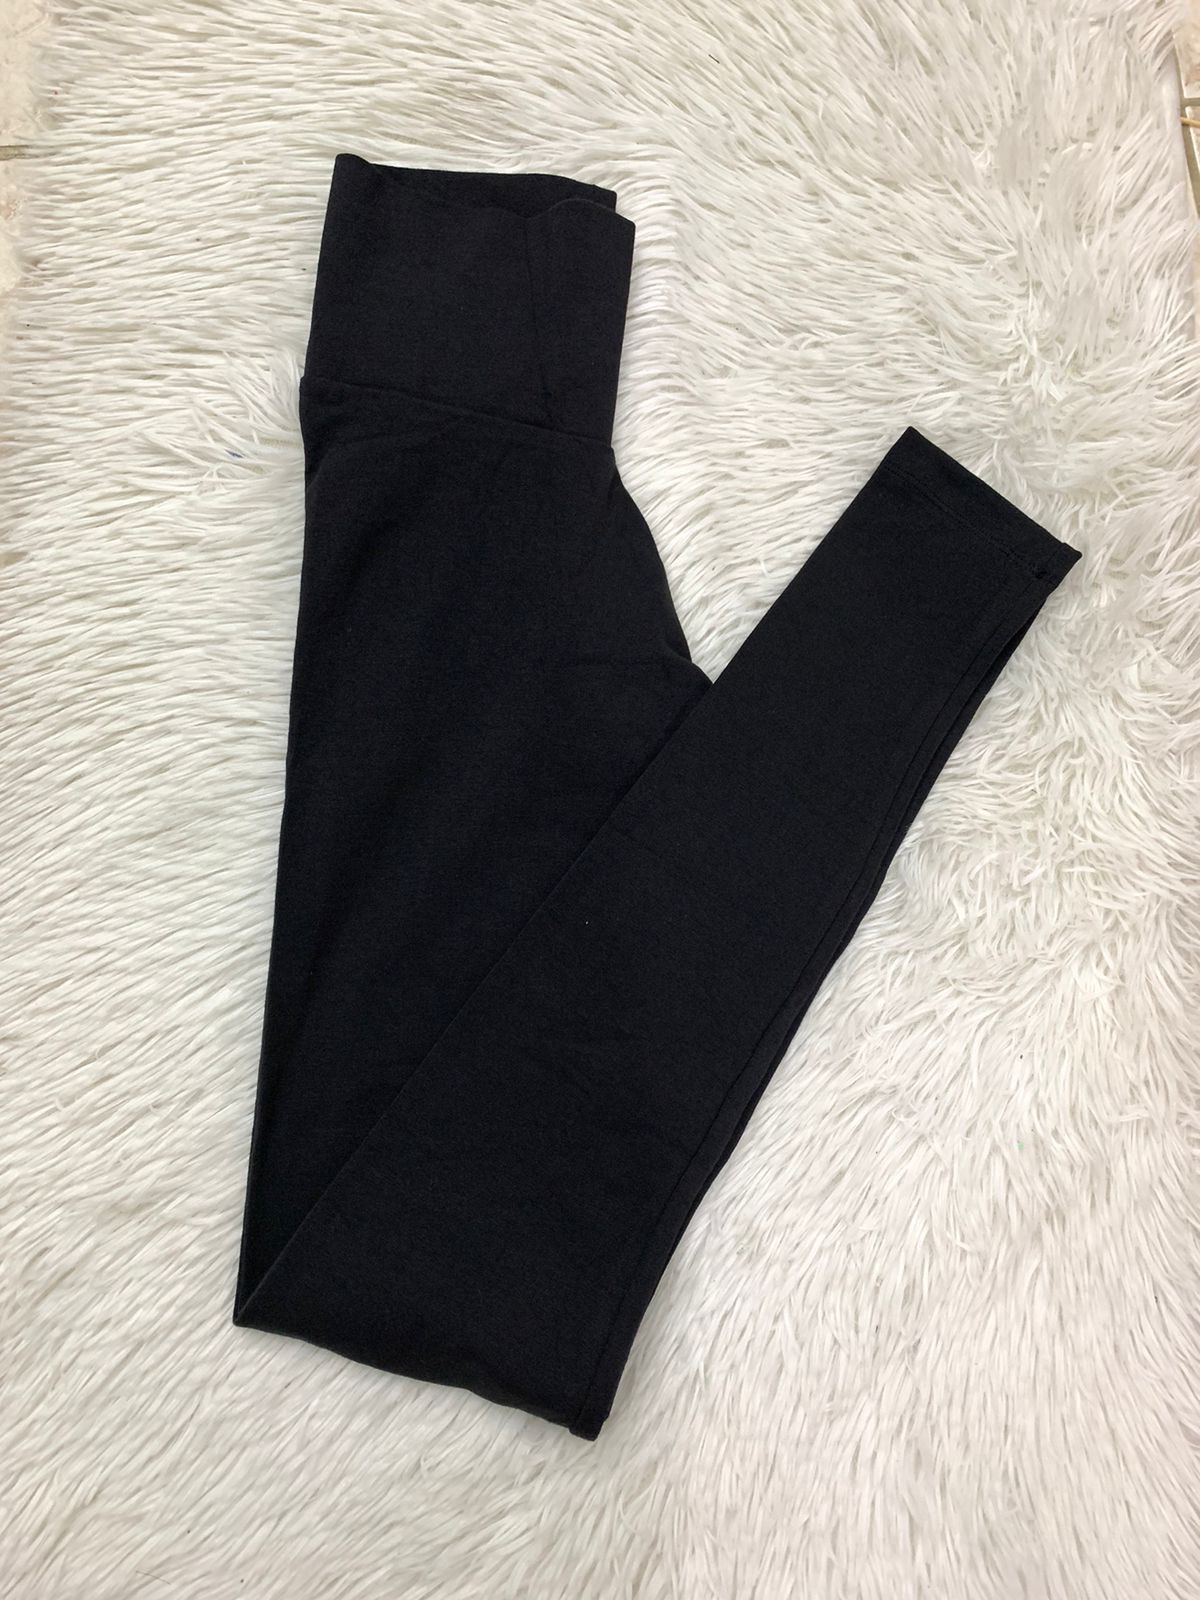 Legging/ Licra Adidas original negra con rayas blancas en ambos lados –  Qlindo Store